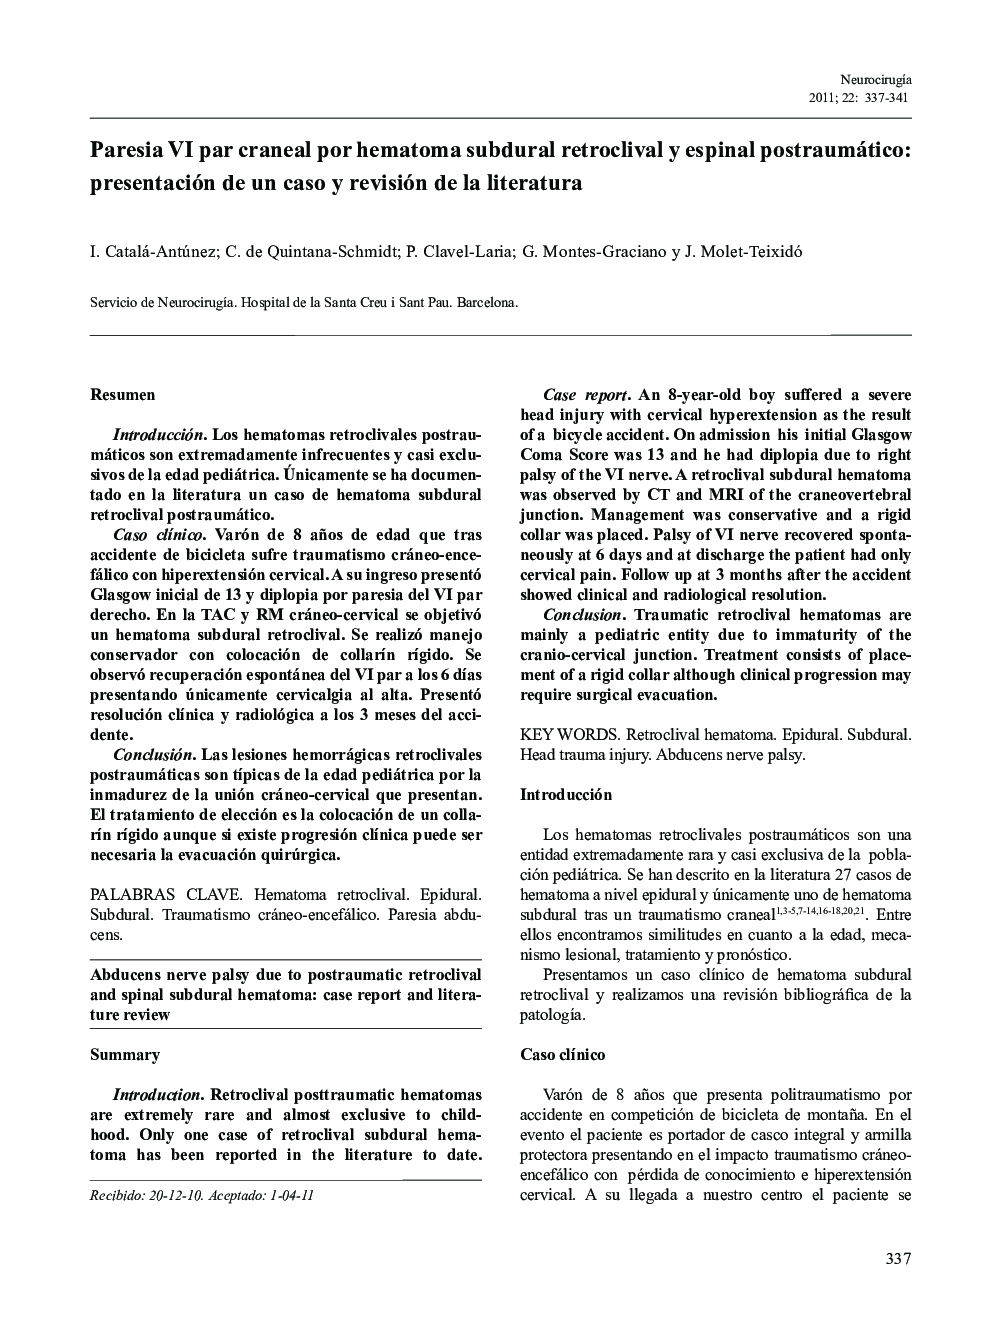 Paresia VI par craneal por hematoma subdural retroclival y espinal postraumático: Presentación de un caso y revisión de la literatura